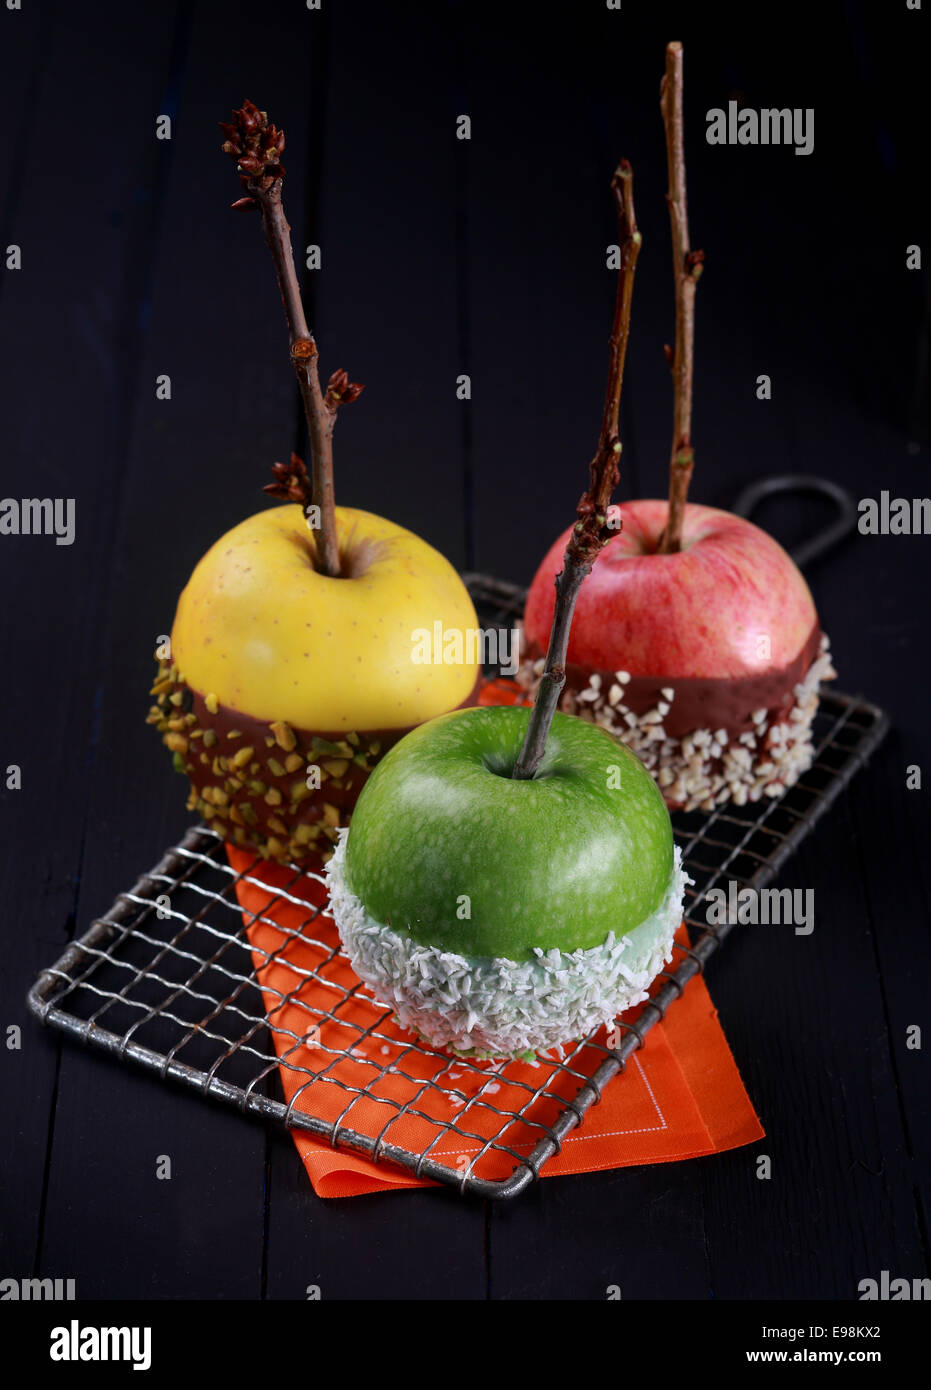 Drei grüne, gelbe und rote candy beschichtete Äpfel in Schokolade getaucht, Nüssen und Streusel für Halloween treating behandelt stehend kühlen auf einem Kuchengitter über einem dunklen Hintergrund Stockfoto